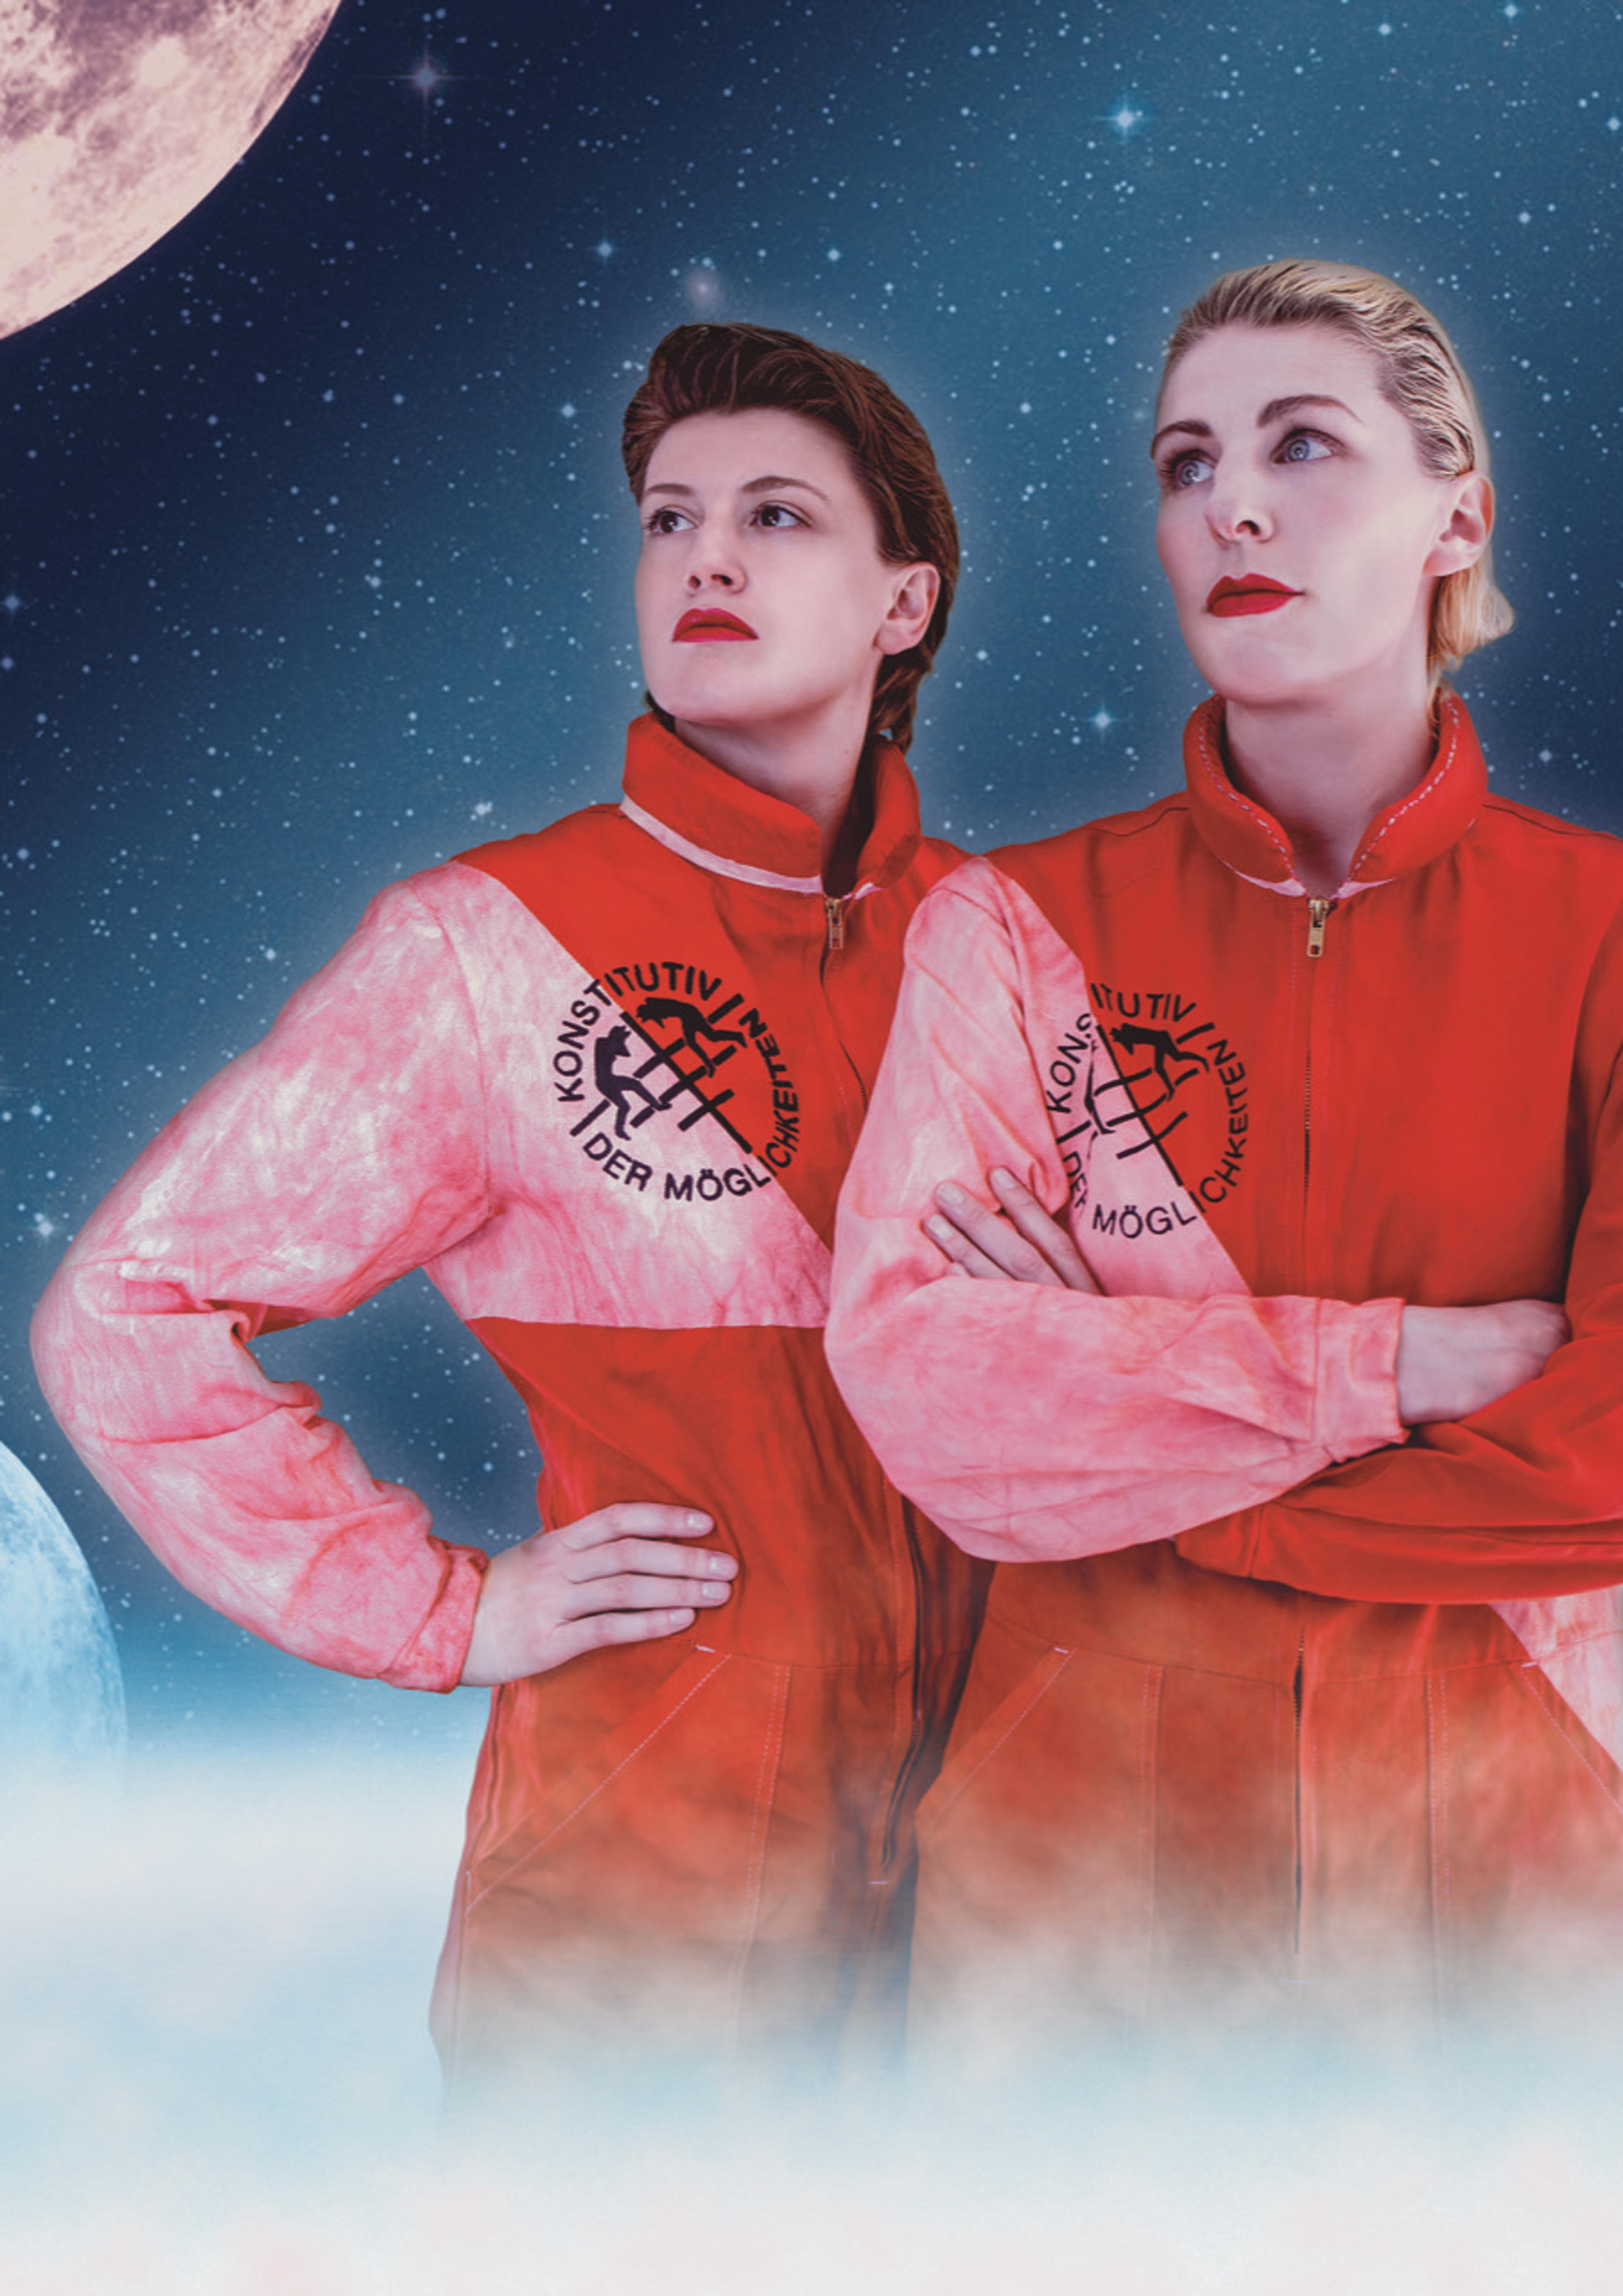 Portraitfoto von konstitutiv der Möglichkeiten, zwei Frauen im Astronautenanzug vor einem Sternenhimmel und Mond